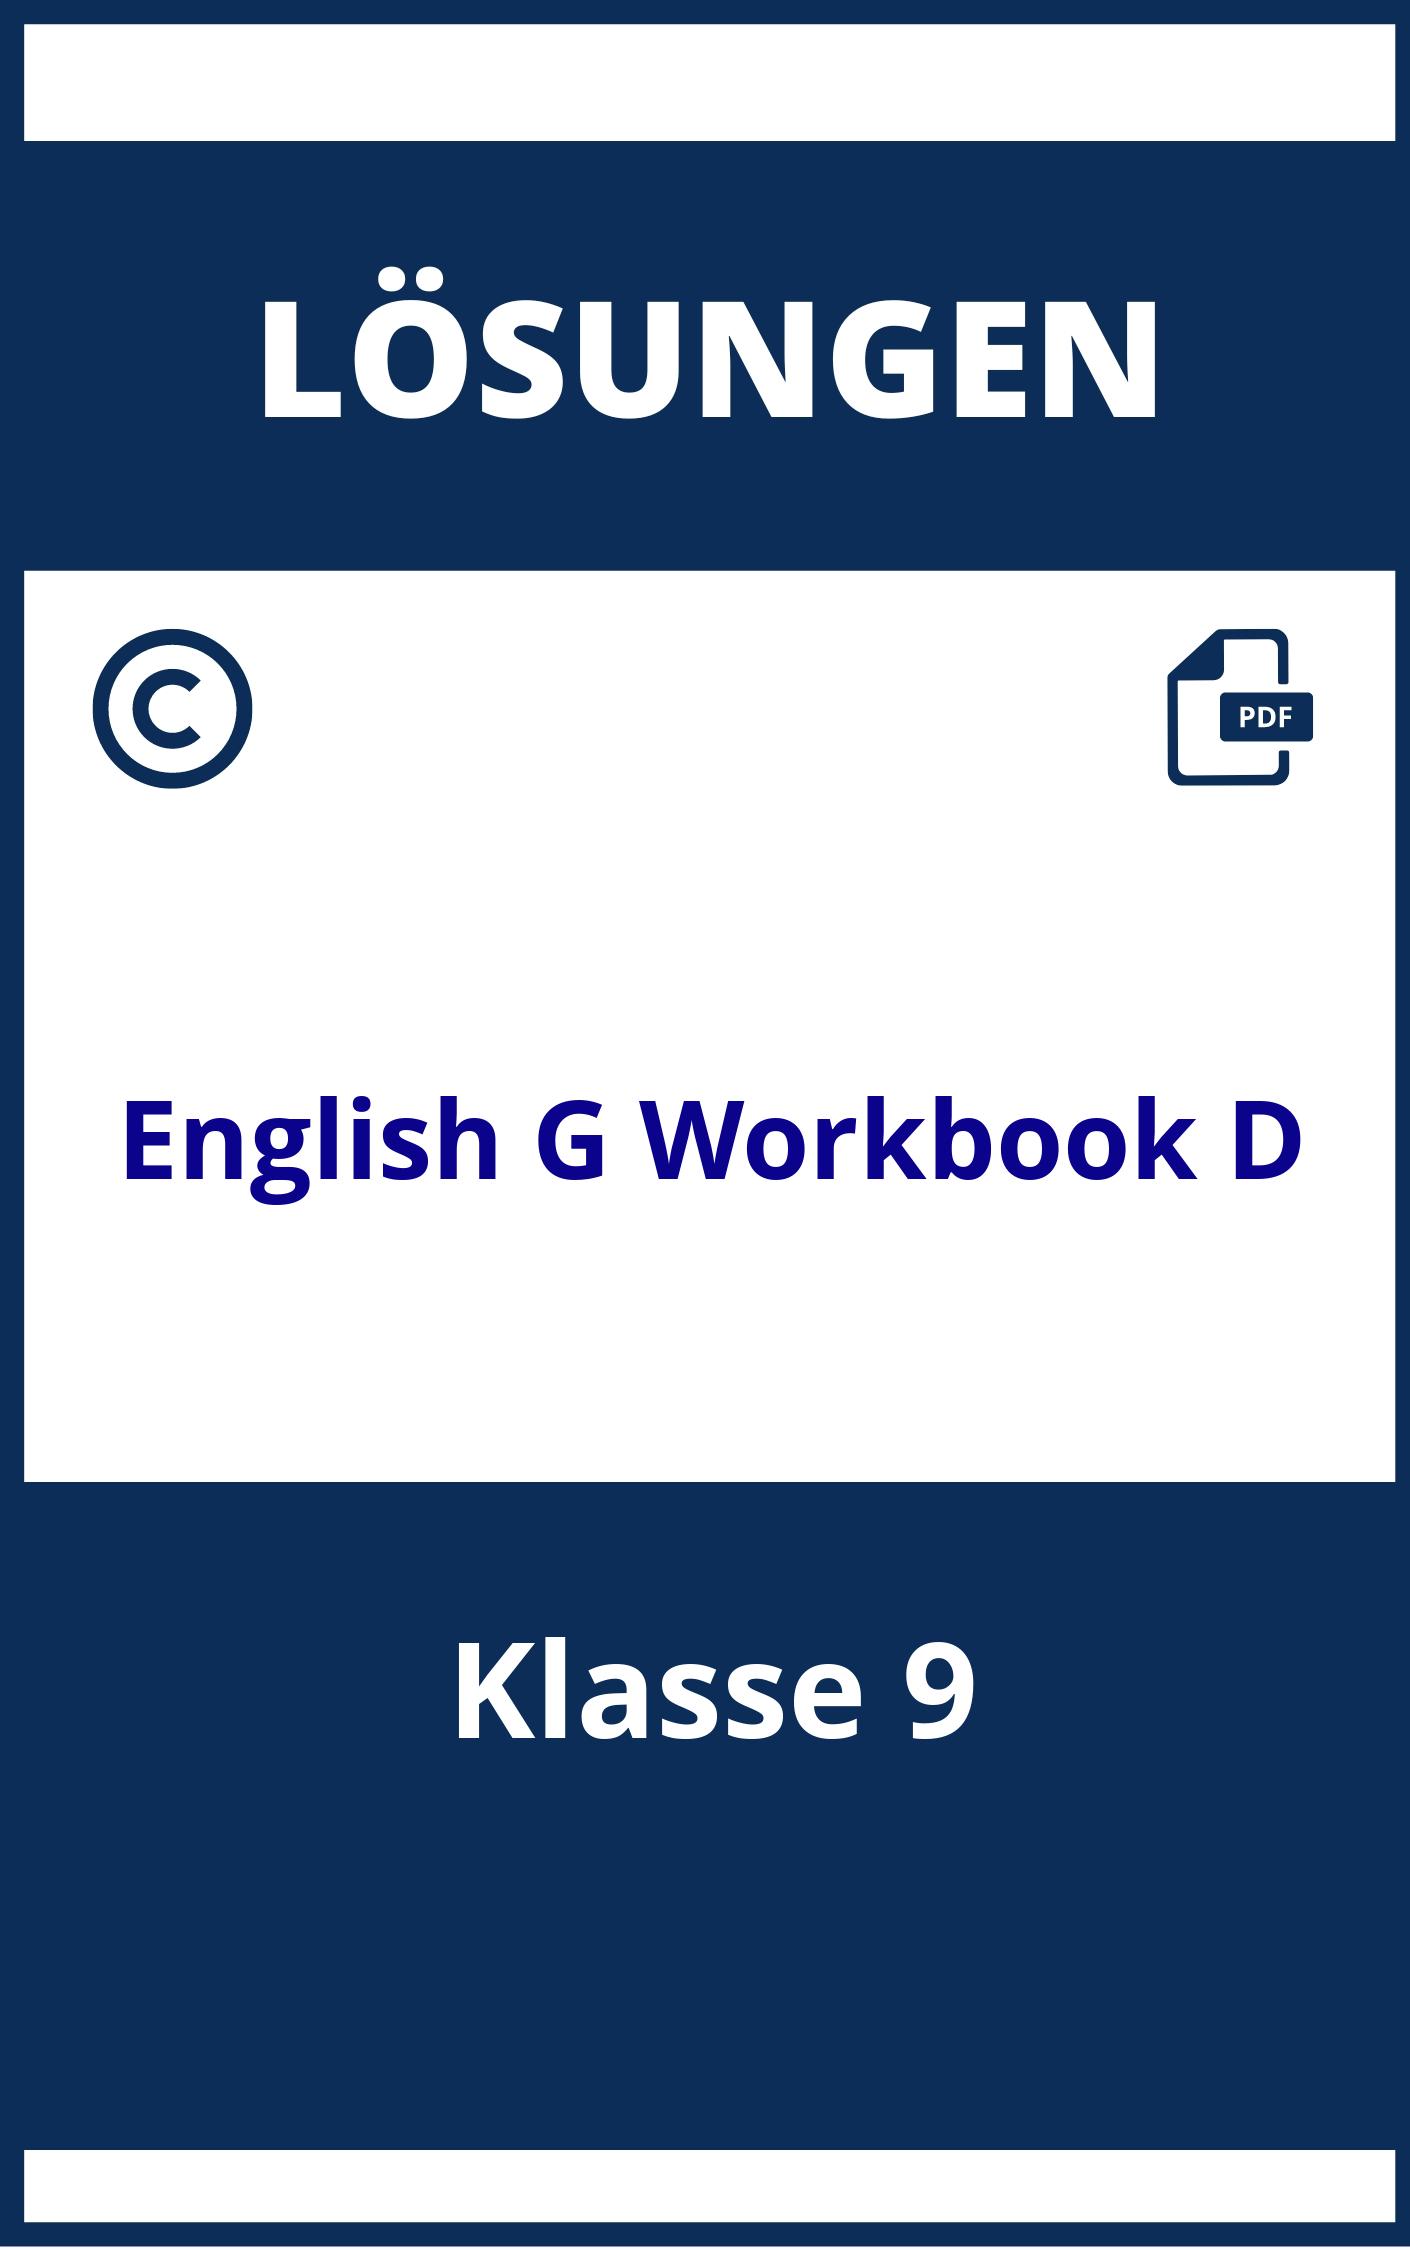 English G 21 Workbook Lösungen Klasse 9 D5